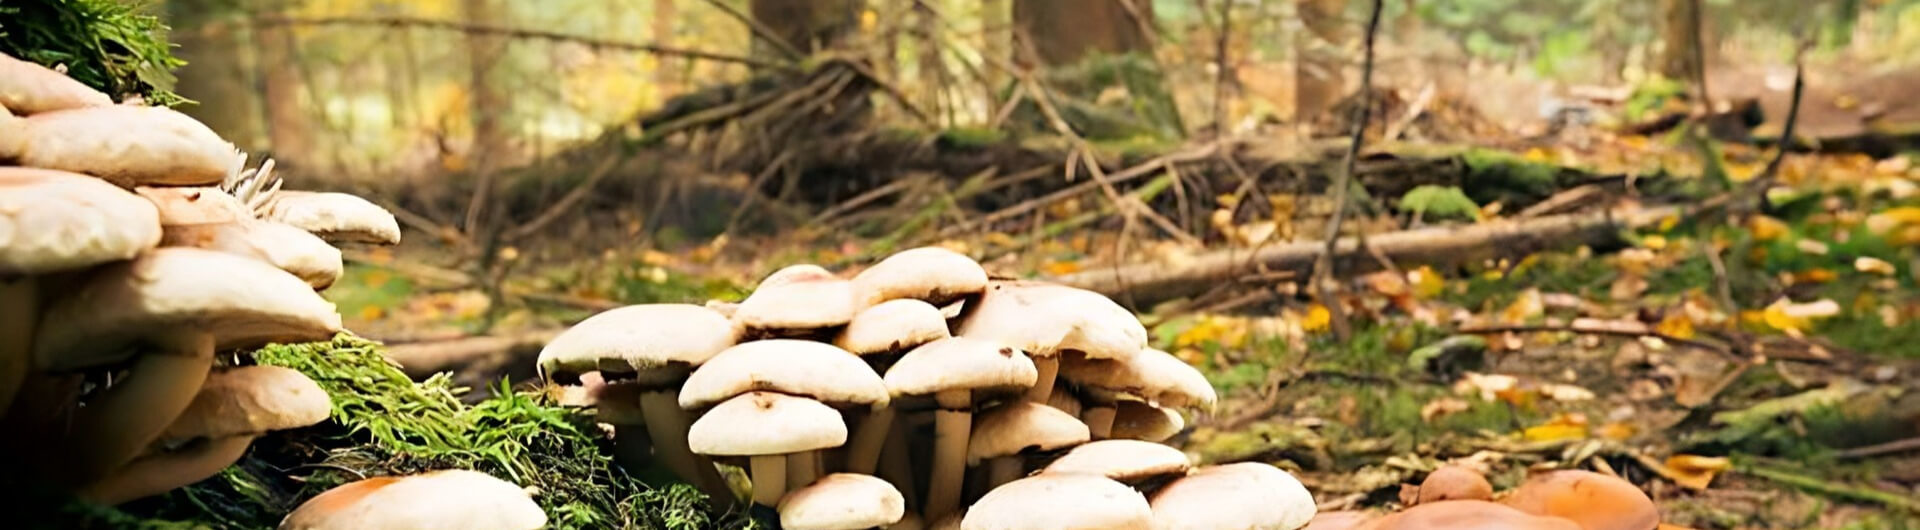 Les champignons aux formes particulières